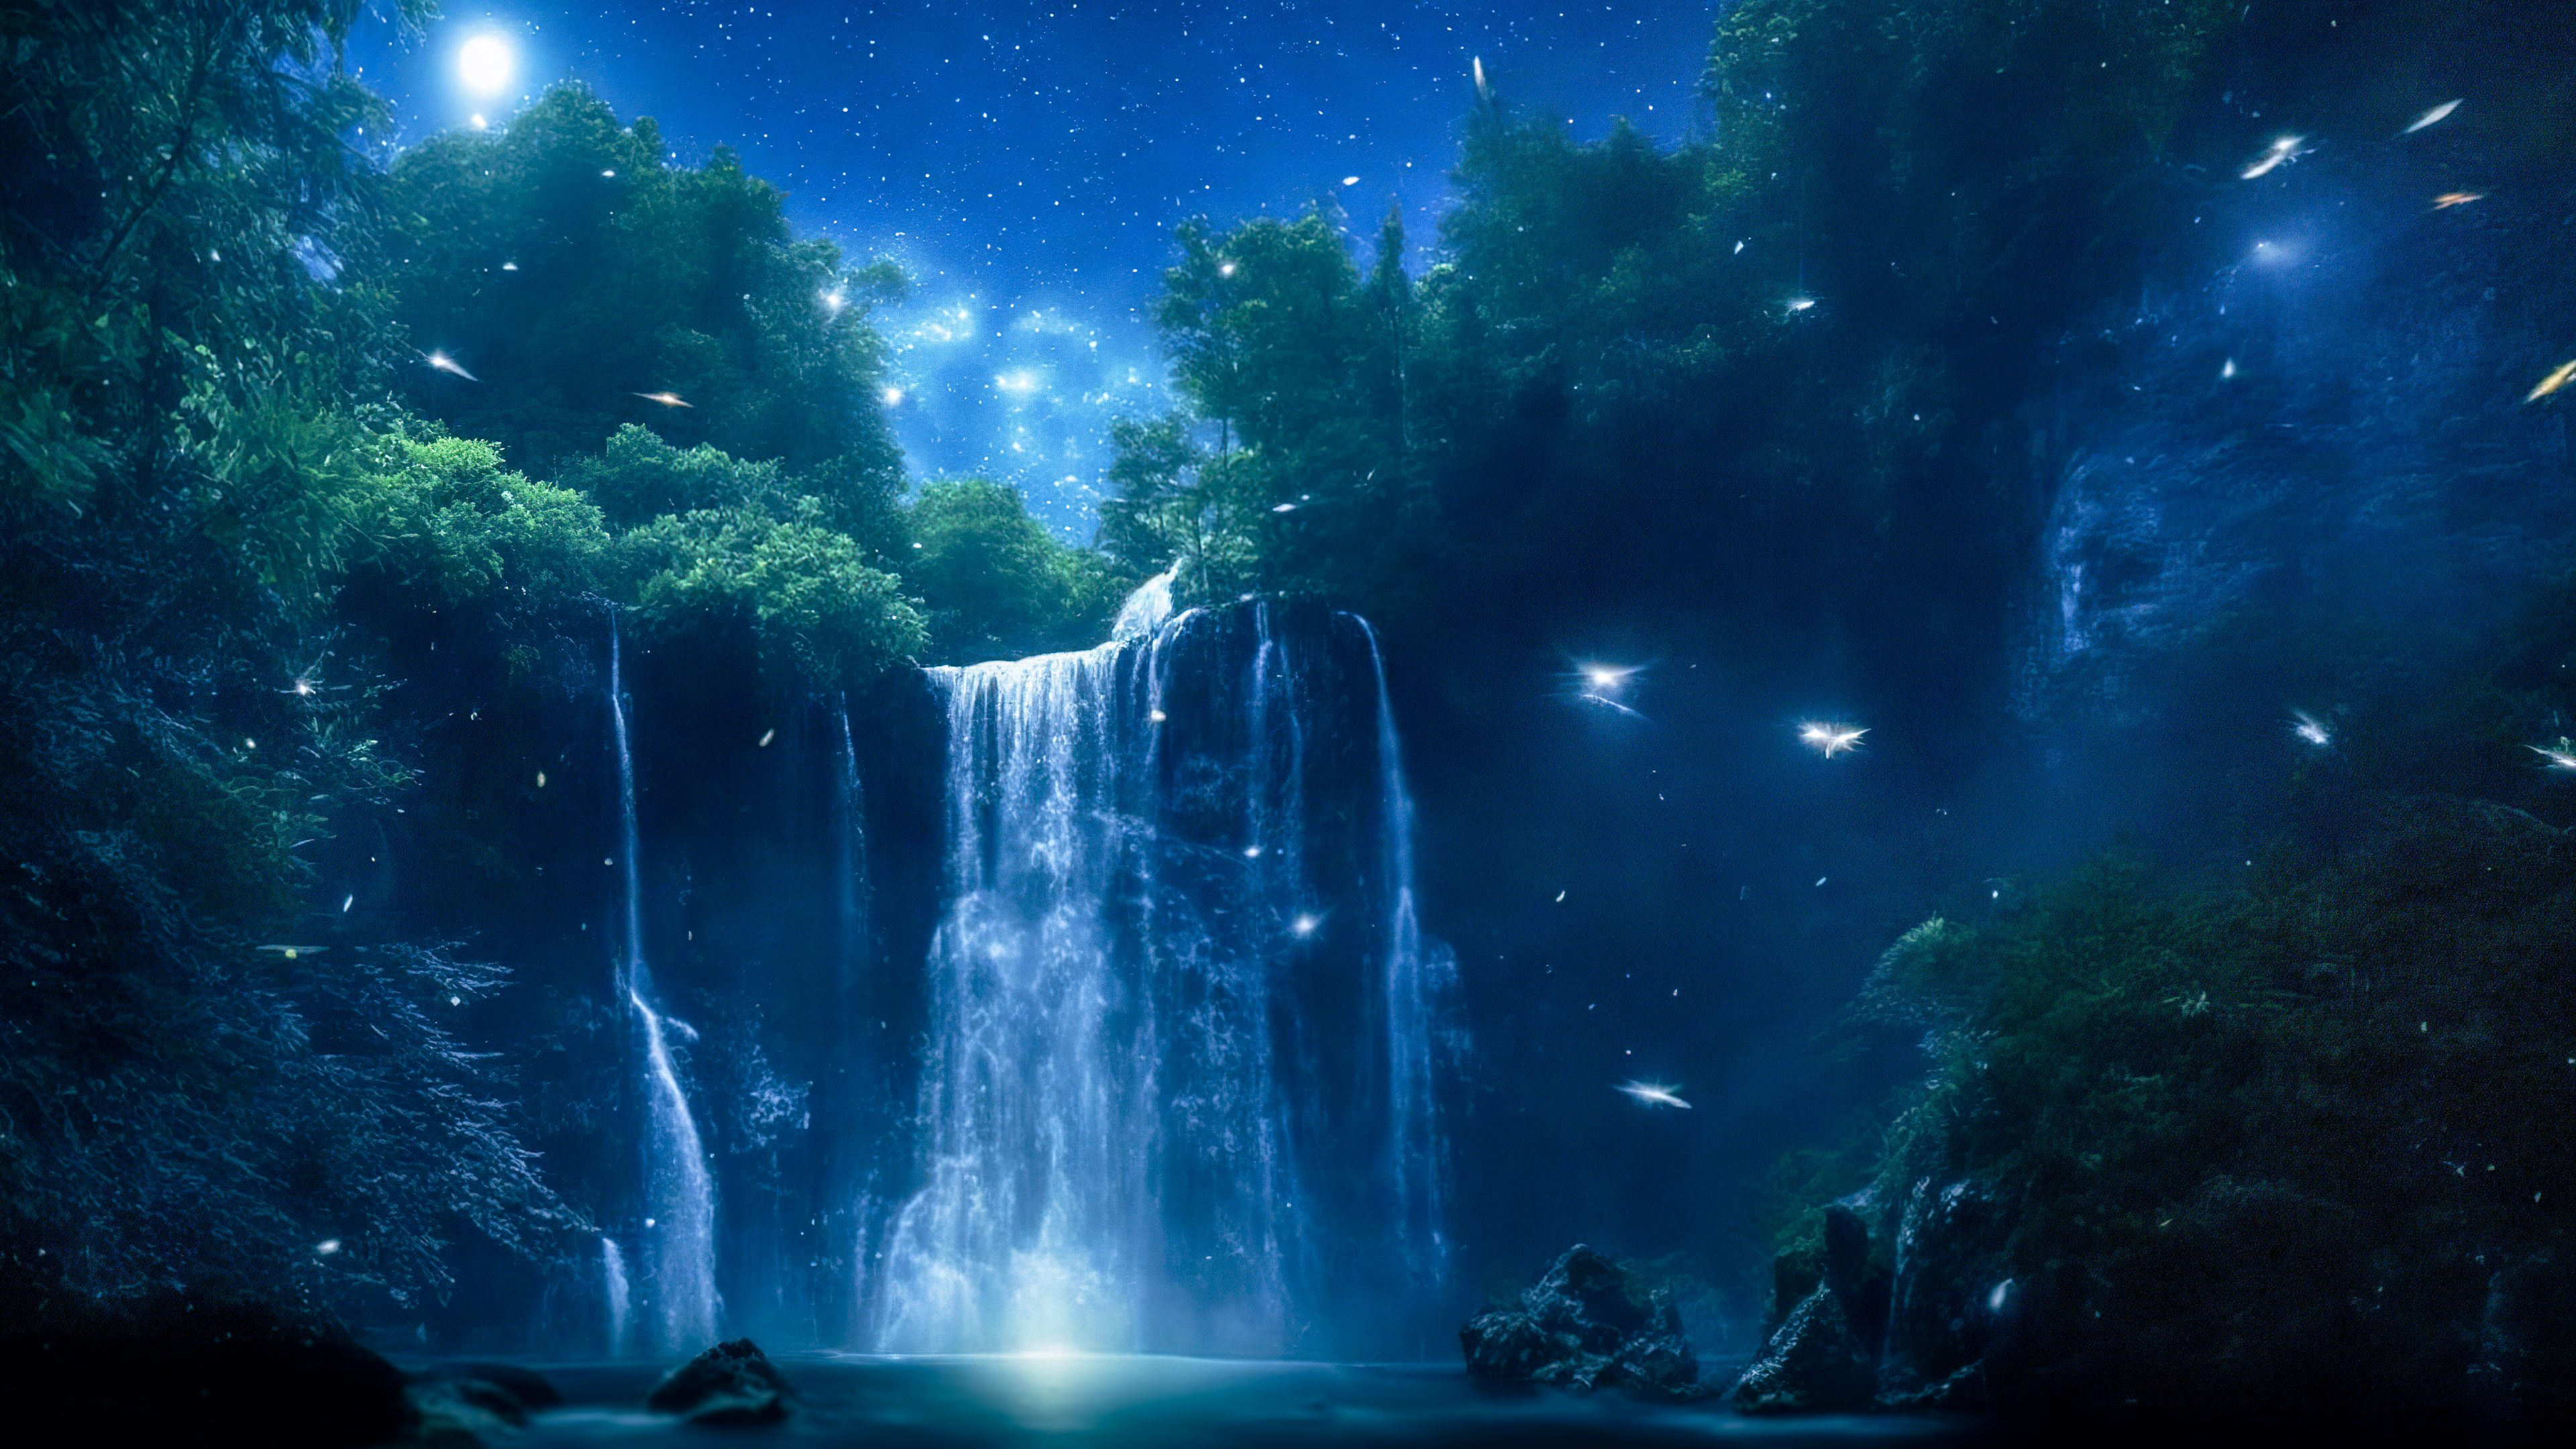 Perdez-vous dans la magie avec notre fond d'écran de ciel nocturne en 4K, présentant une cascade magique illuminée par le clair de lune, avec des lucioles dansant autour de ses eaux en cascade.